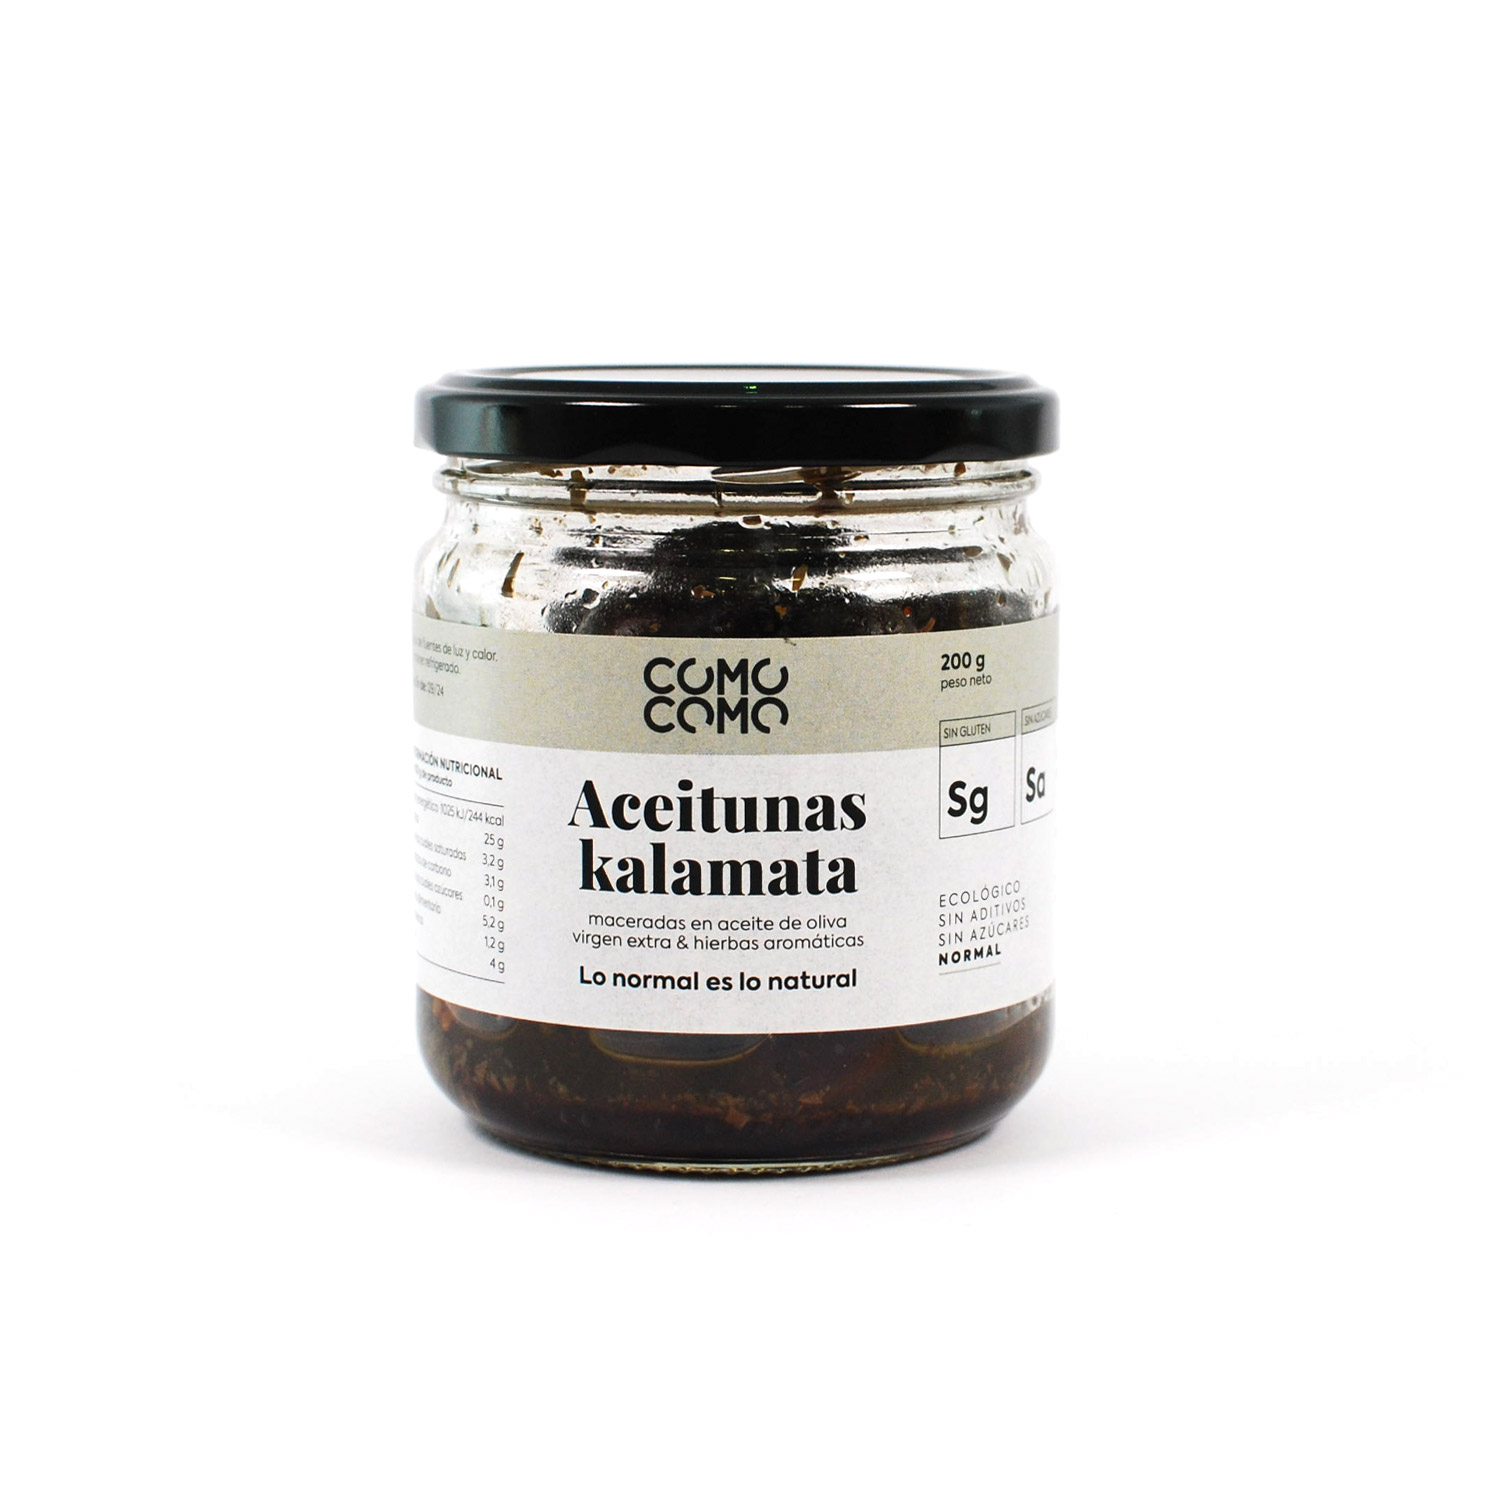 Aceitunas kalamata con hierbas aromáticas